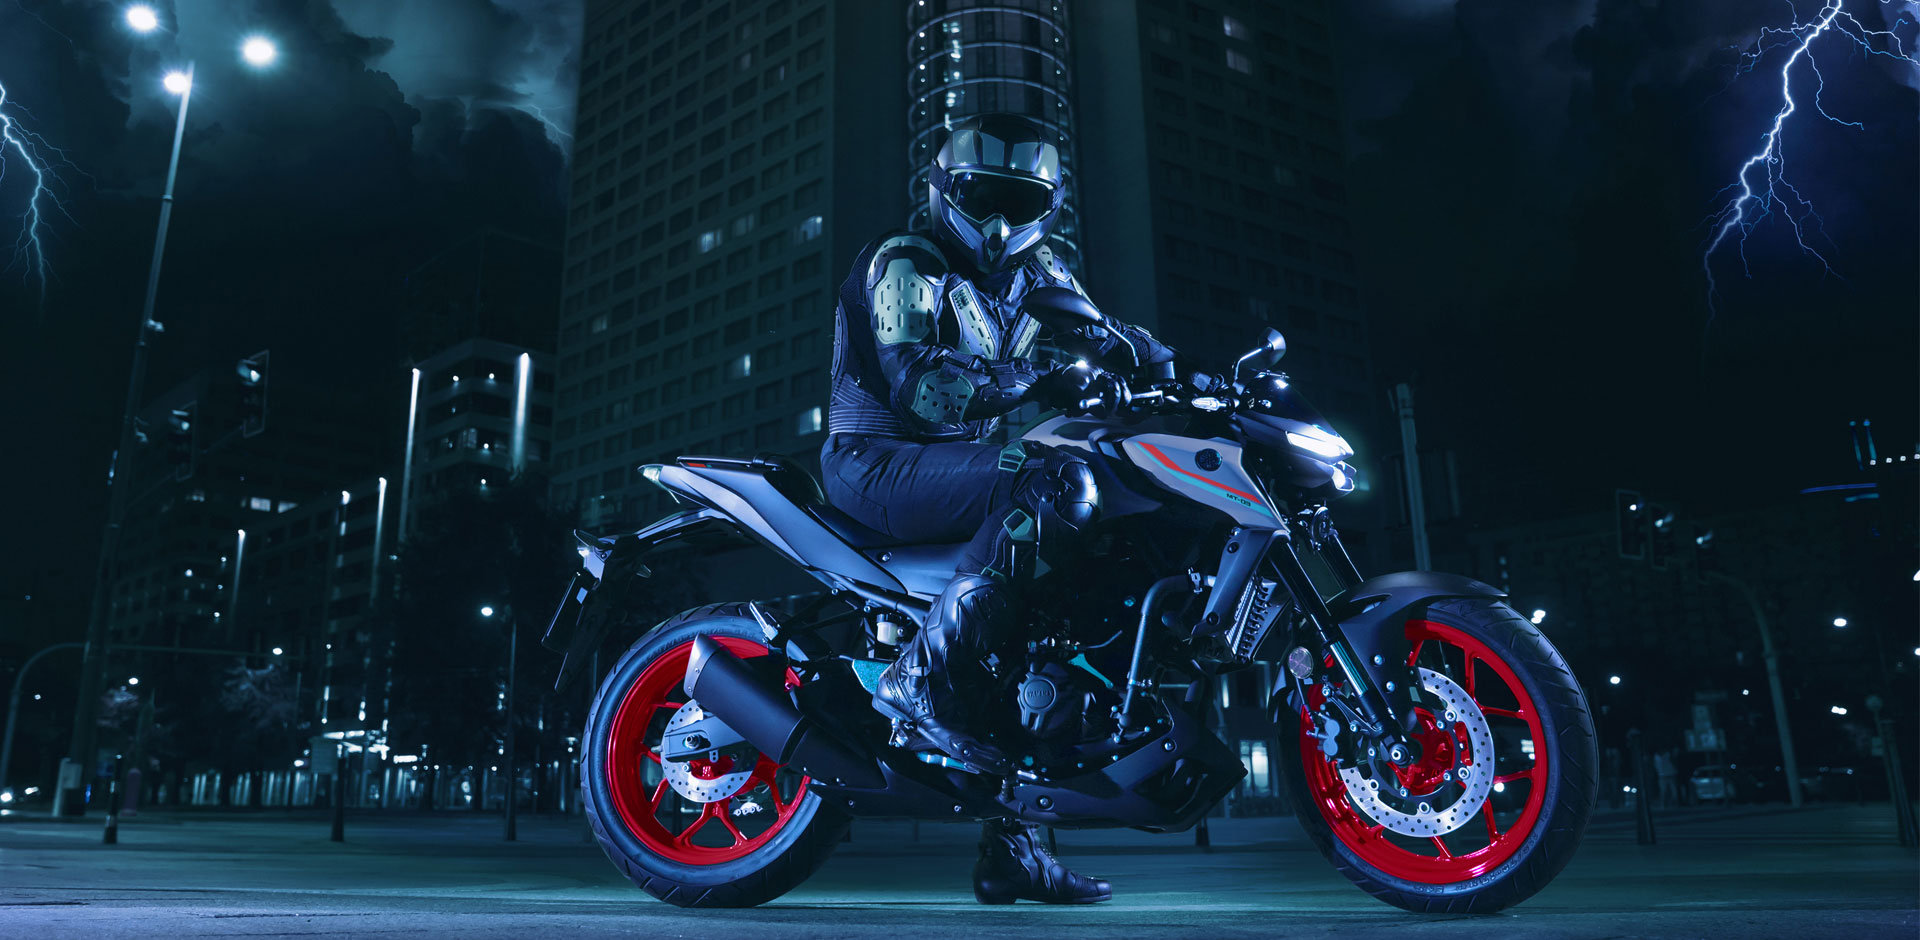 Cinq raisons pour lesquelles la MT-03 de Yamaha est la moto idéale pour les débutants